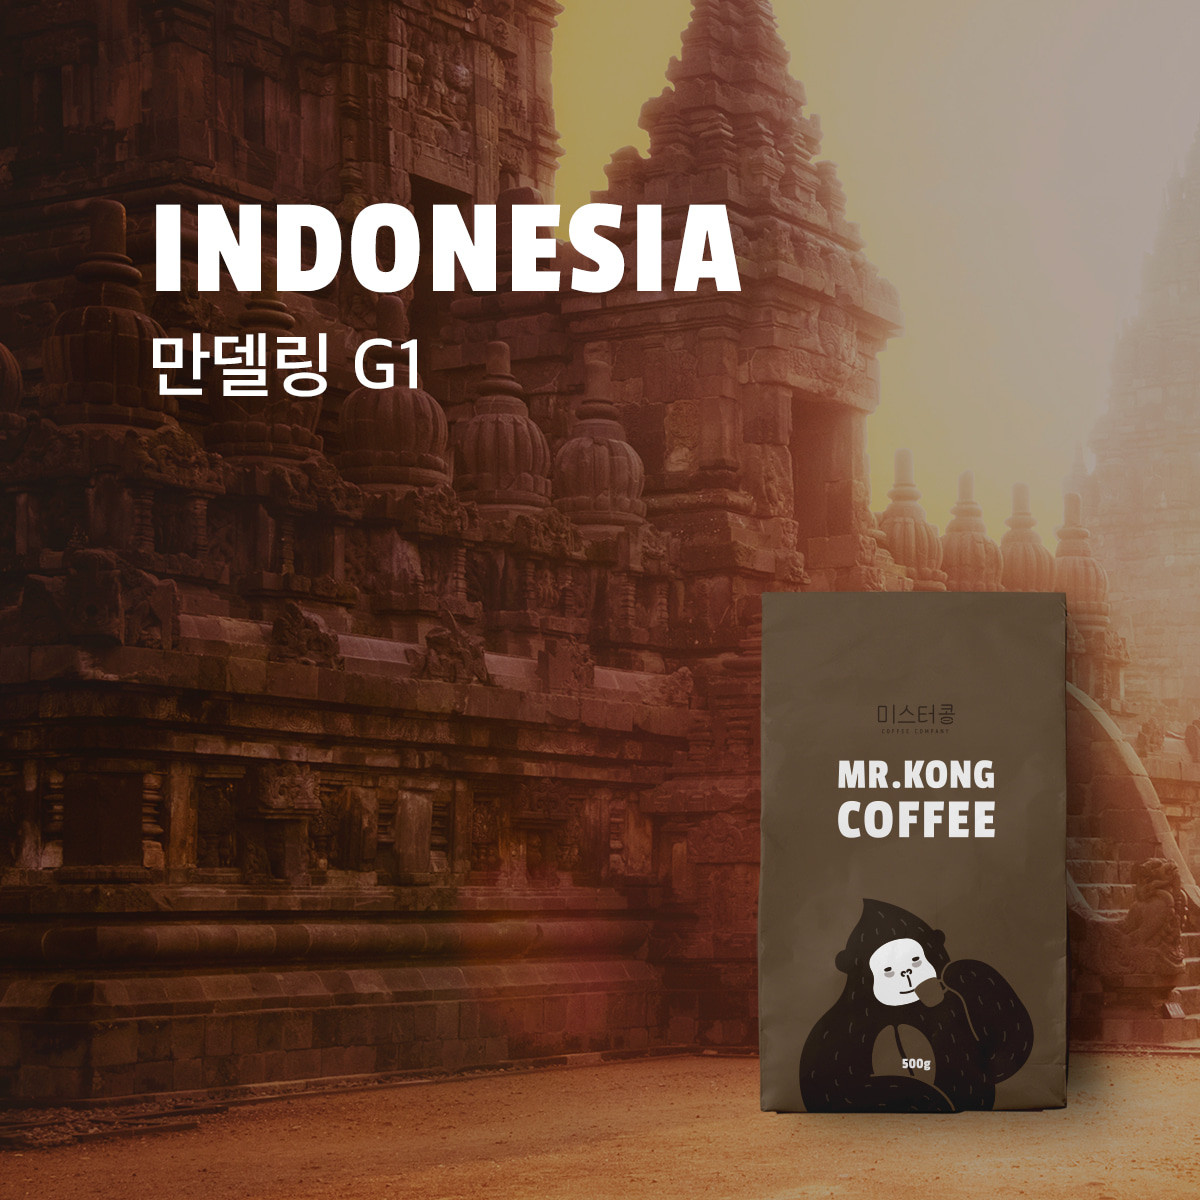 인도네시아 만델링 G1